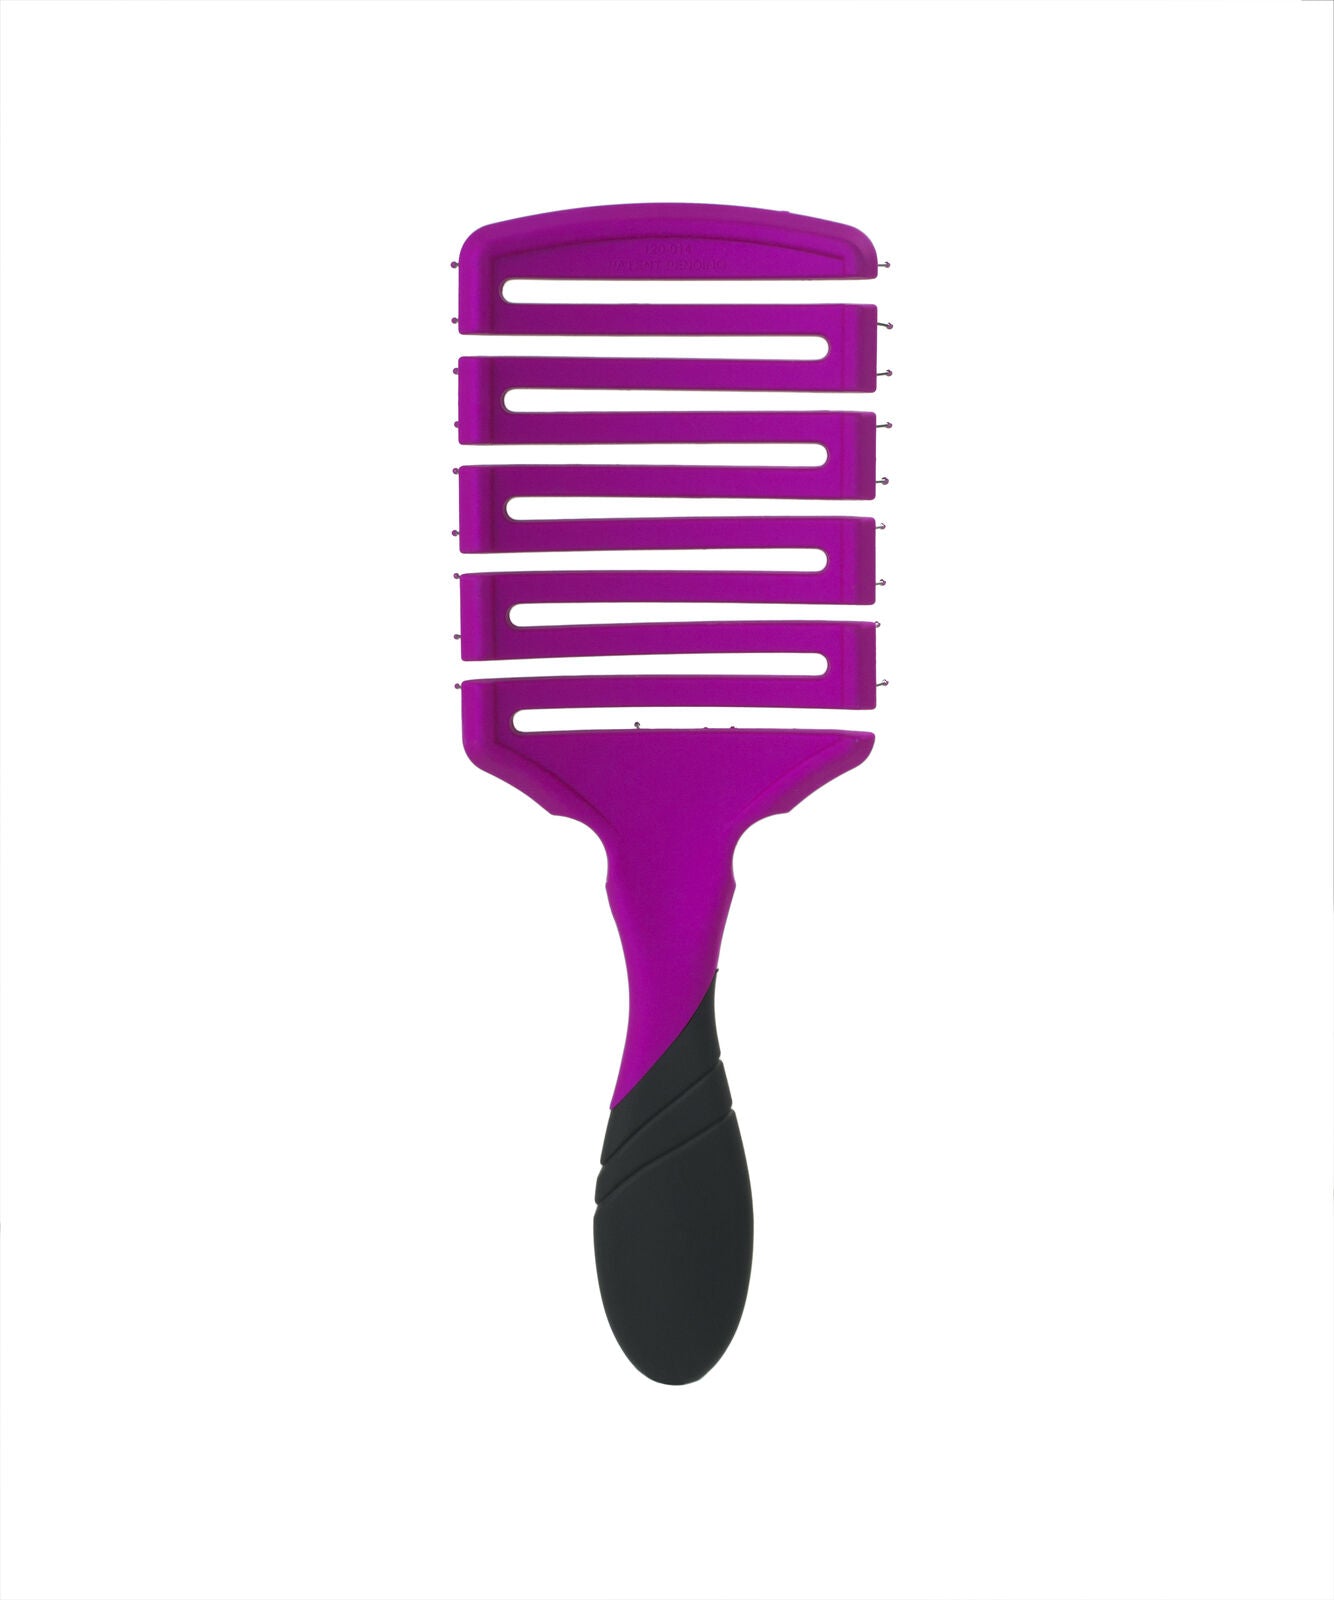 Wet Brush Pro Detangler Brush Flex Dry Paddle - Purple